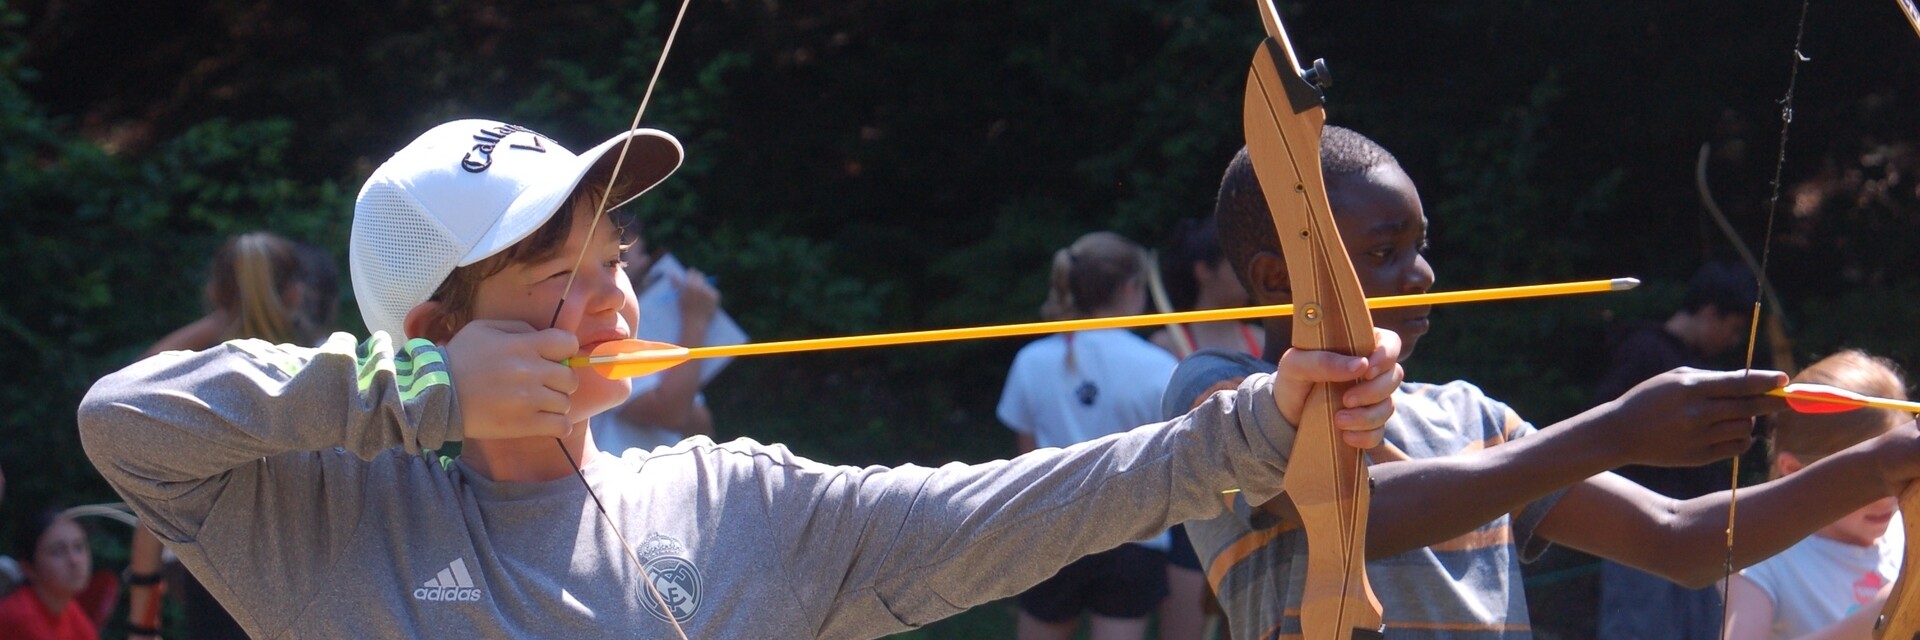 camper practicing archery 